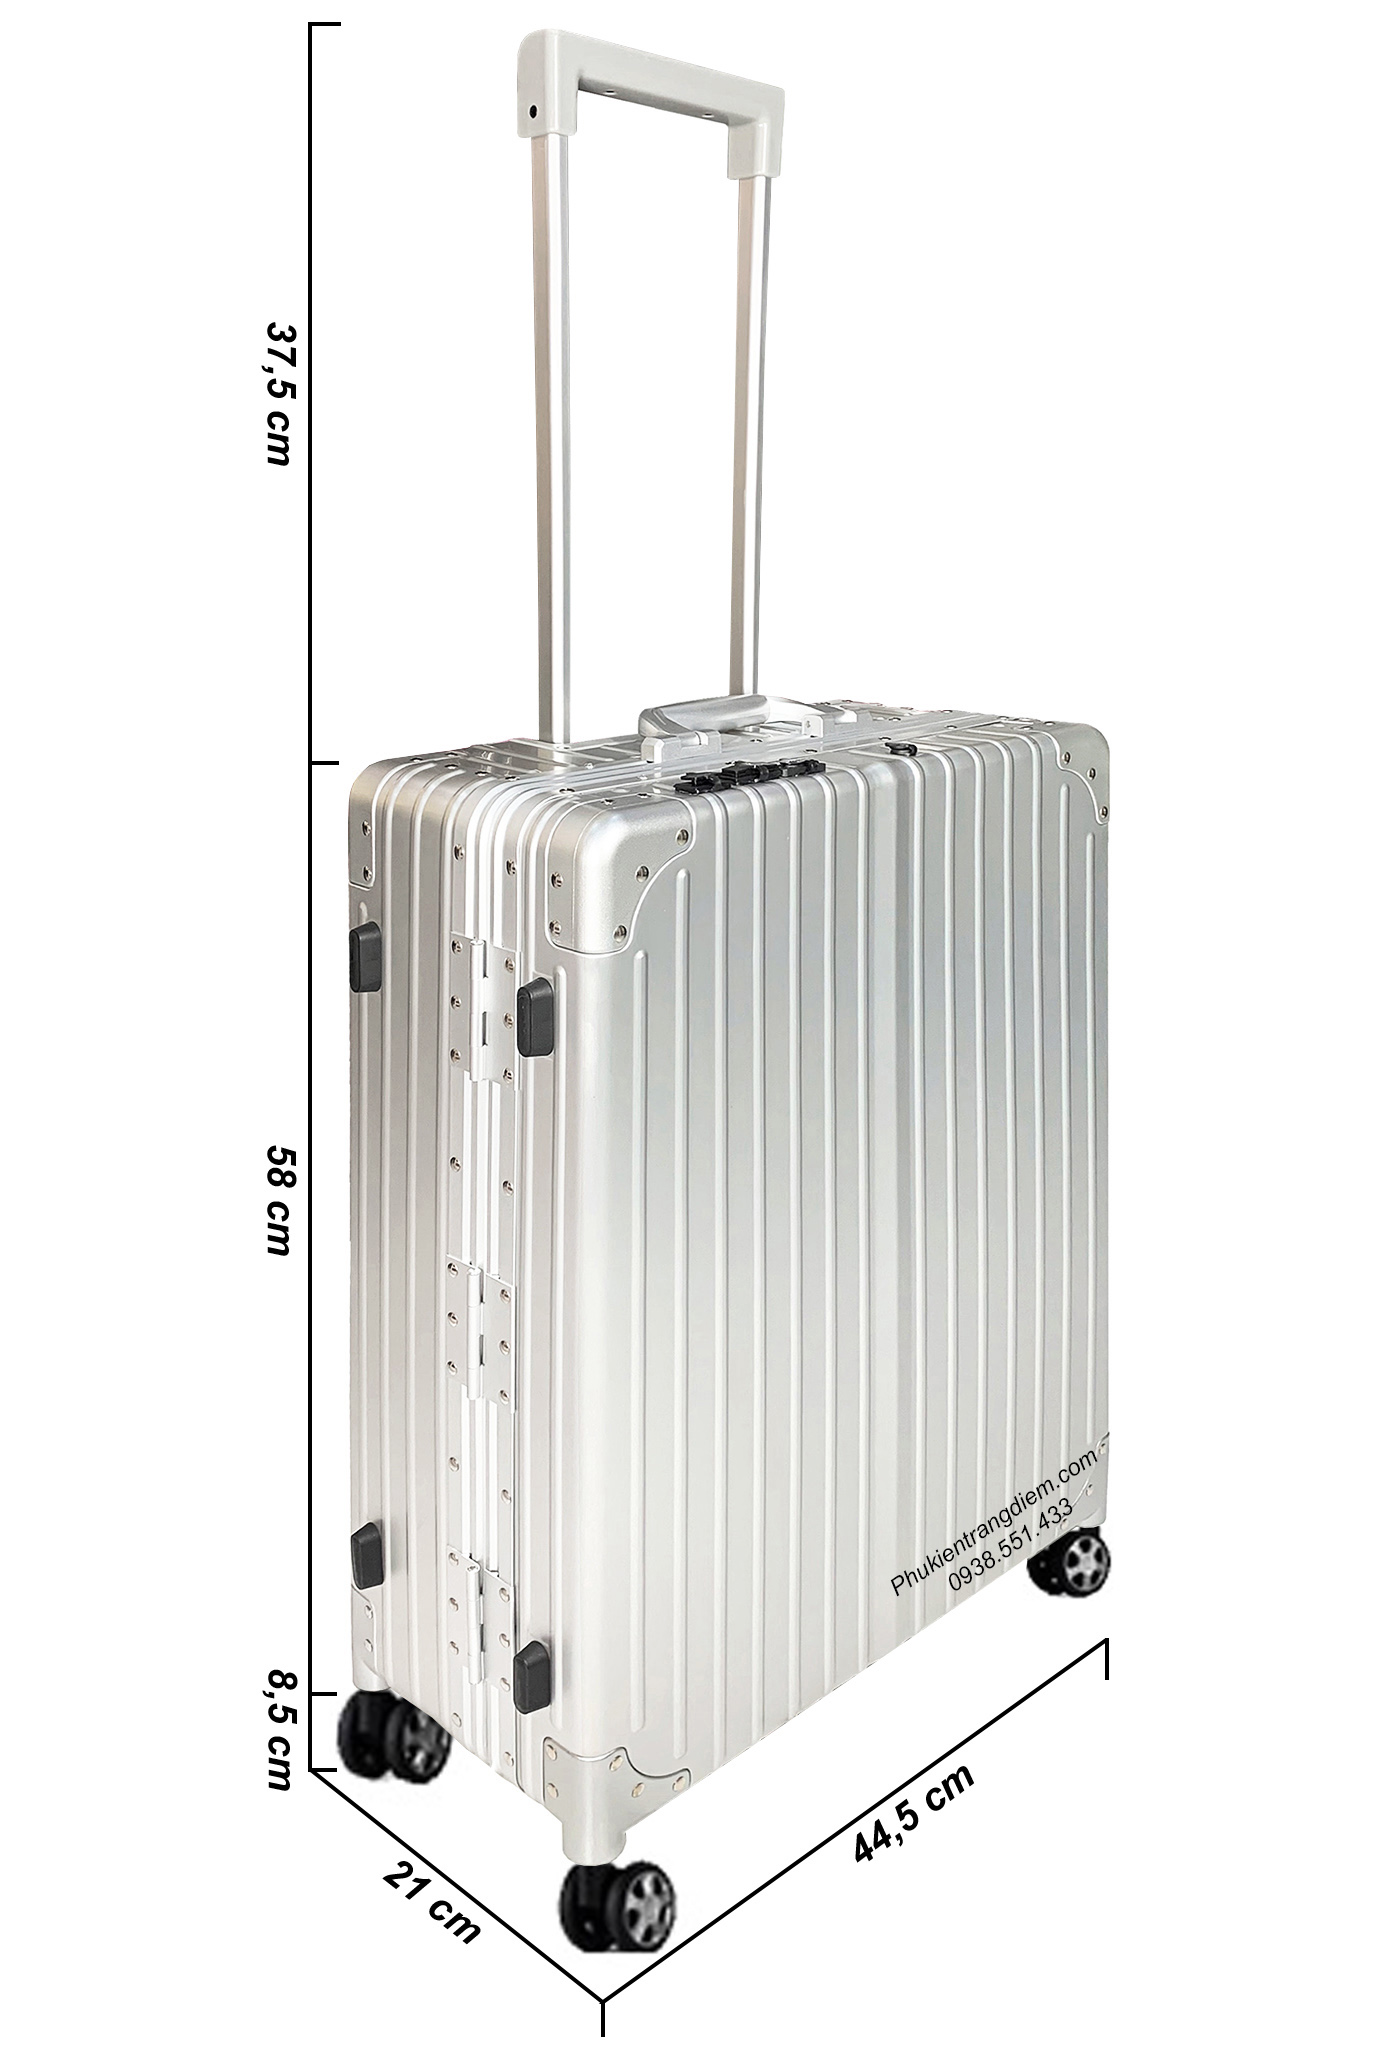 Vali thùng đựng đồ trang điểm, make up chuyên nghiệp có gương đèn LED + loa bluetooth cao cấp - full nhôm